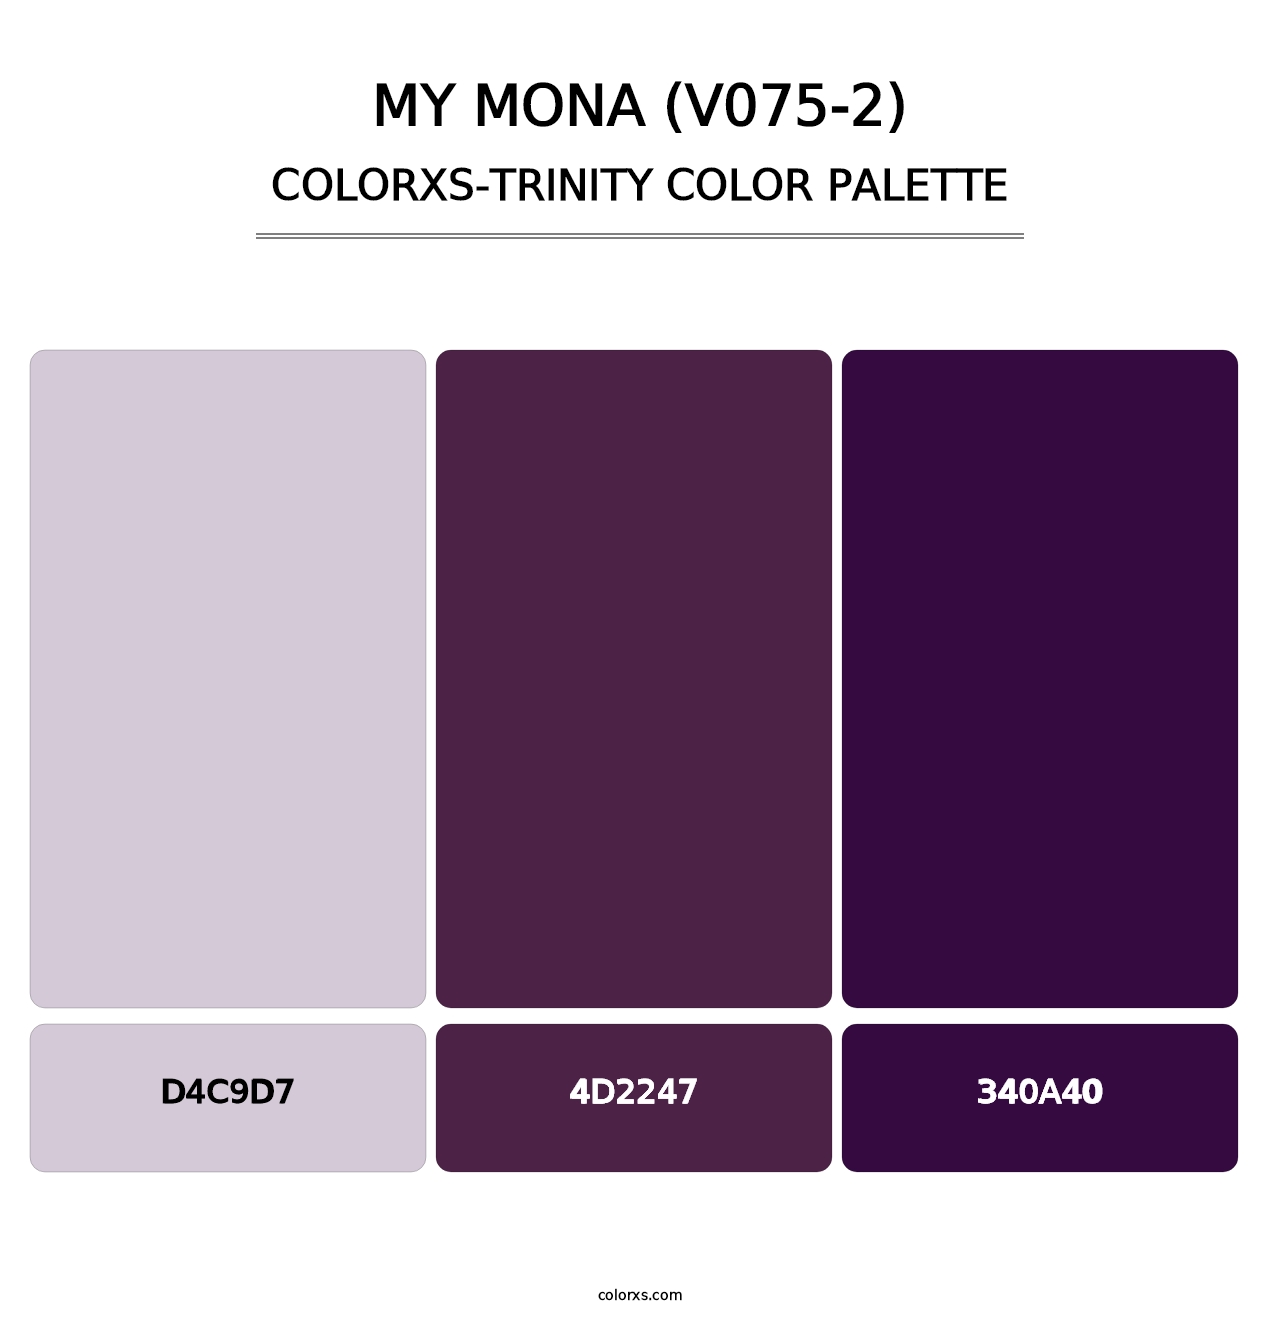 My Mona (V075-2) - Colorxs Trinity Palette